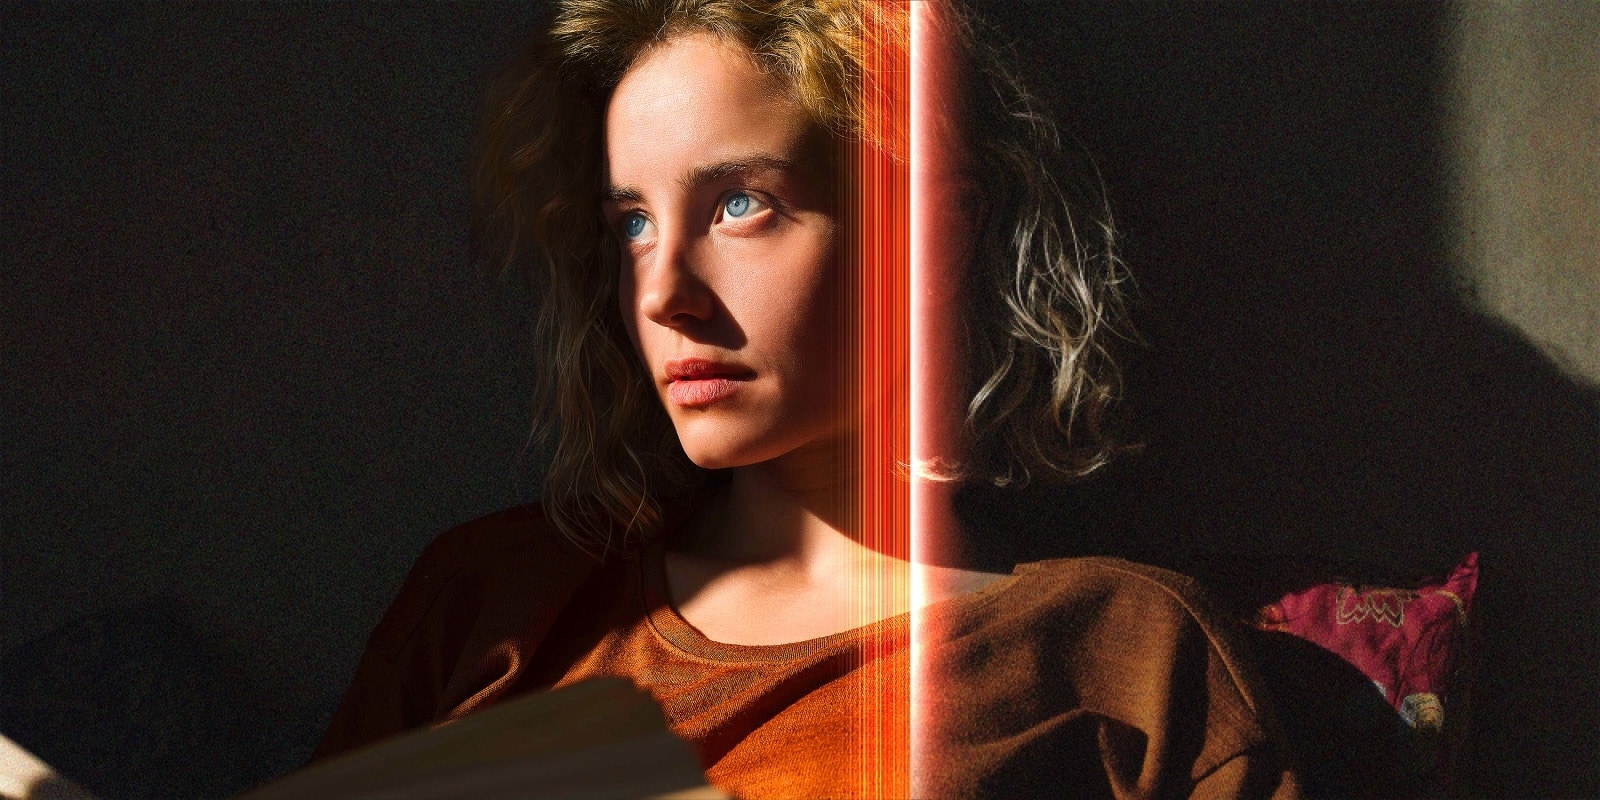 Una mujer con penetrantes ojos azules y un top naranja quemado en un espacio oscuro. Líneas rojas que representan refinamientos de IA cubren parte de su rostro, que es brillante y detallado, mientras que el resto de la imagen parece apagada.